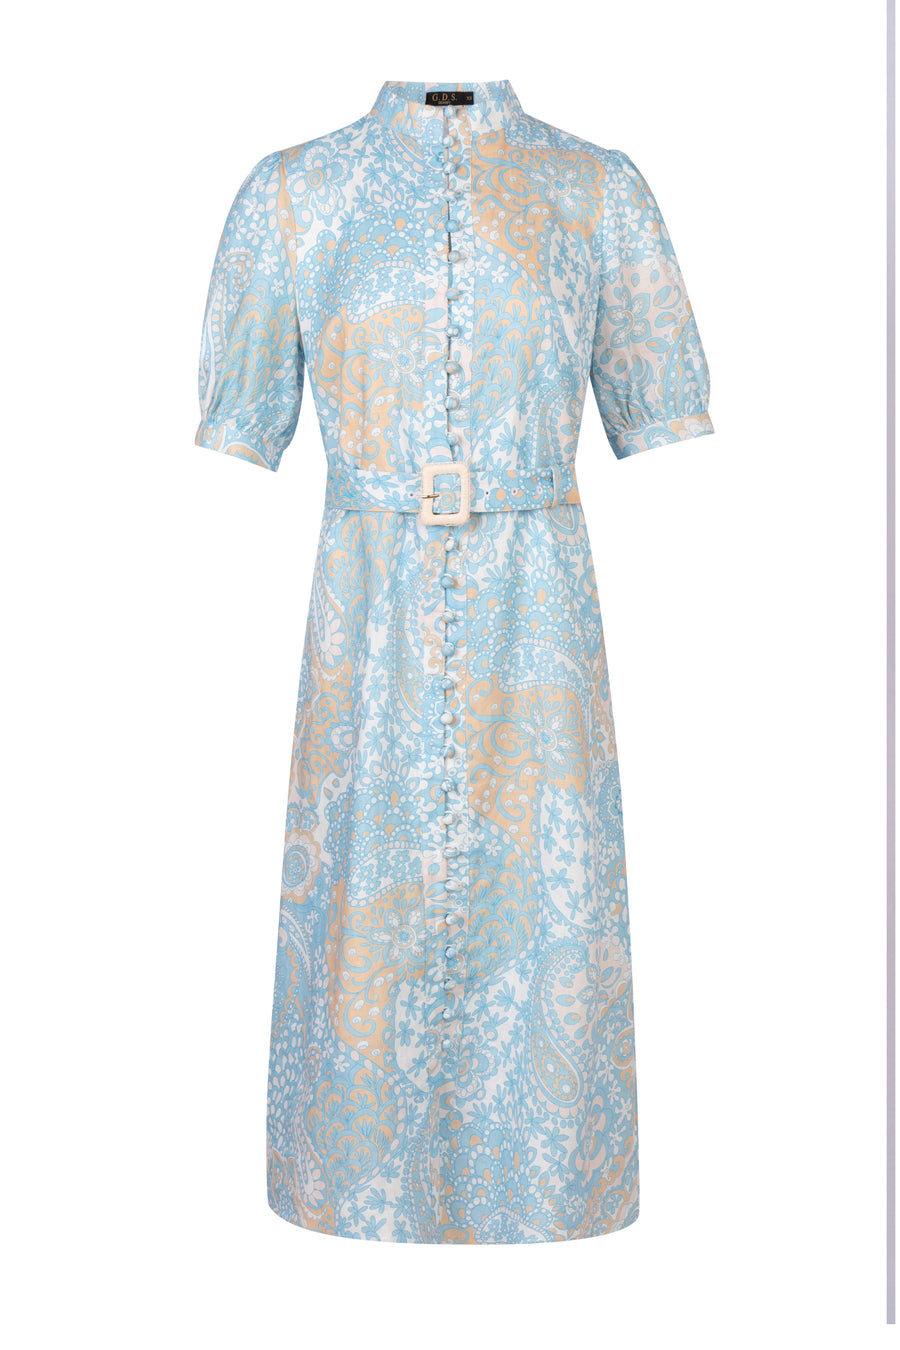 GDS Clarisse Belted Linen Long Dress | Aqua DRESSES BLUE Catch GDS L M S SALE XL XS